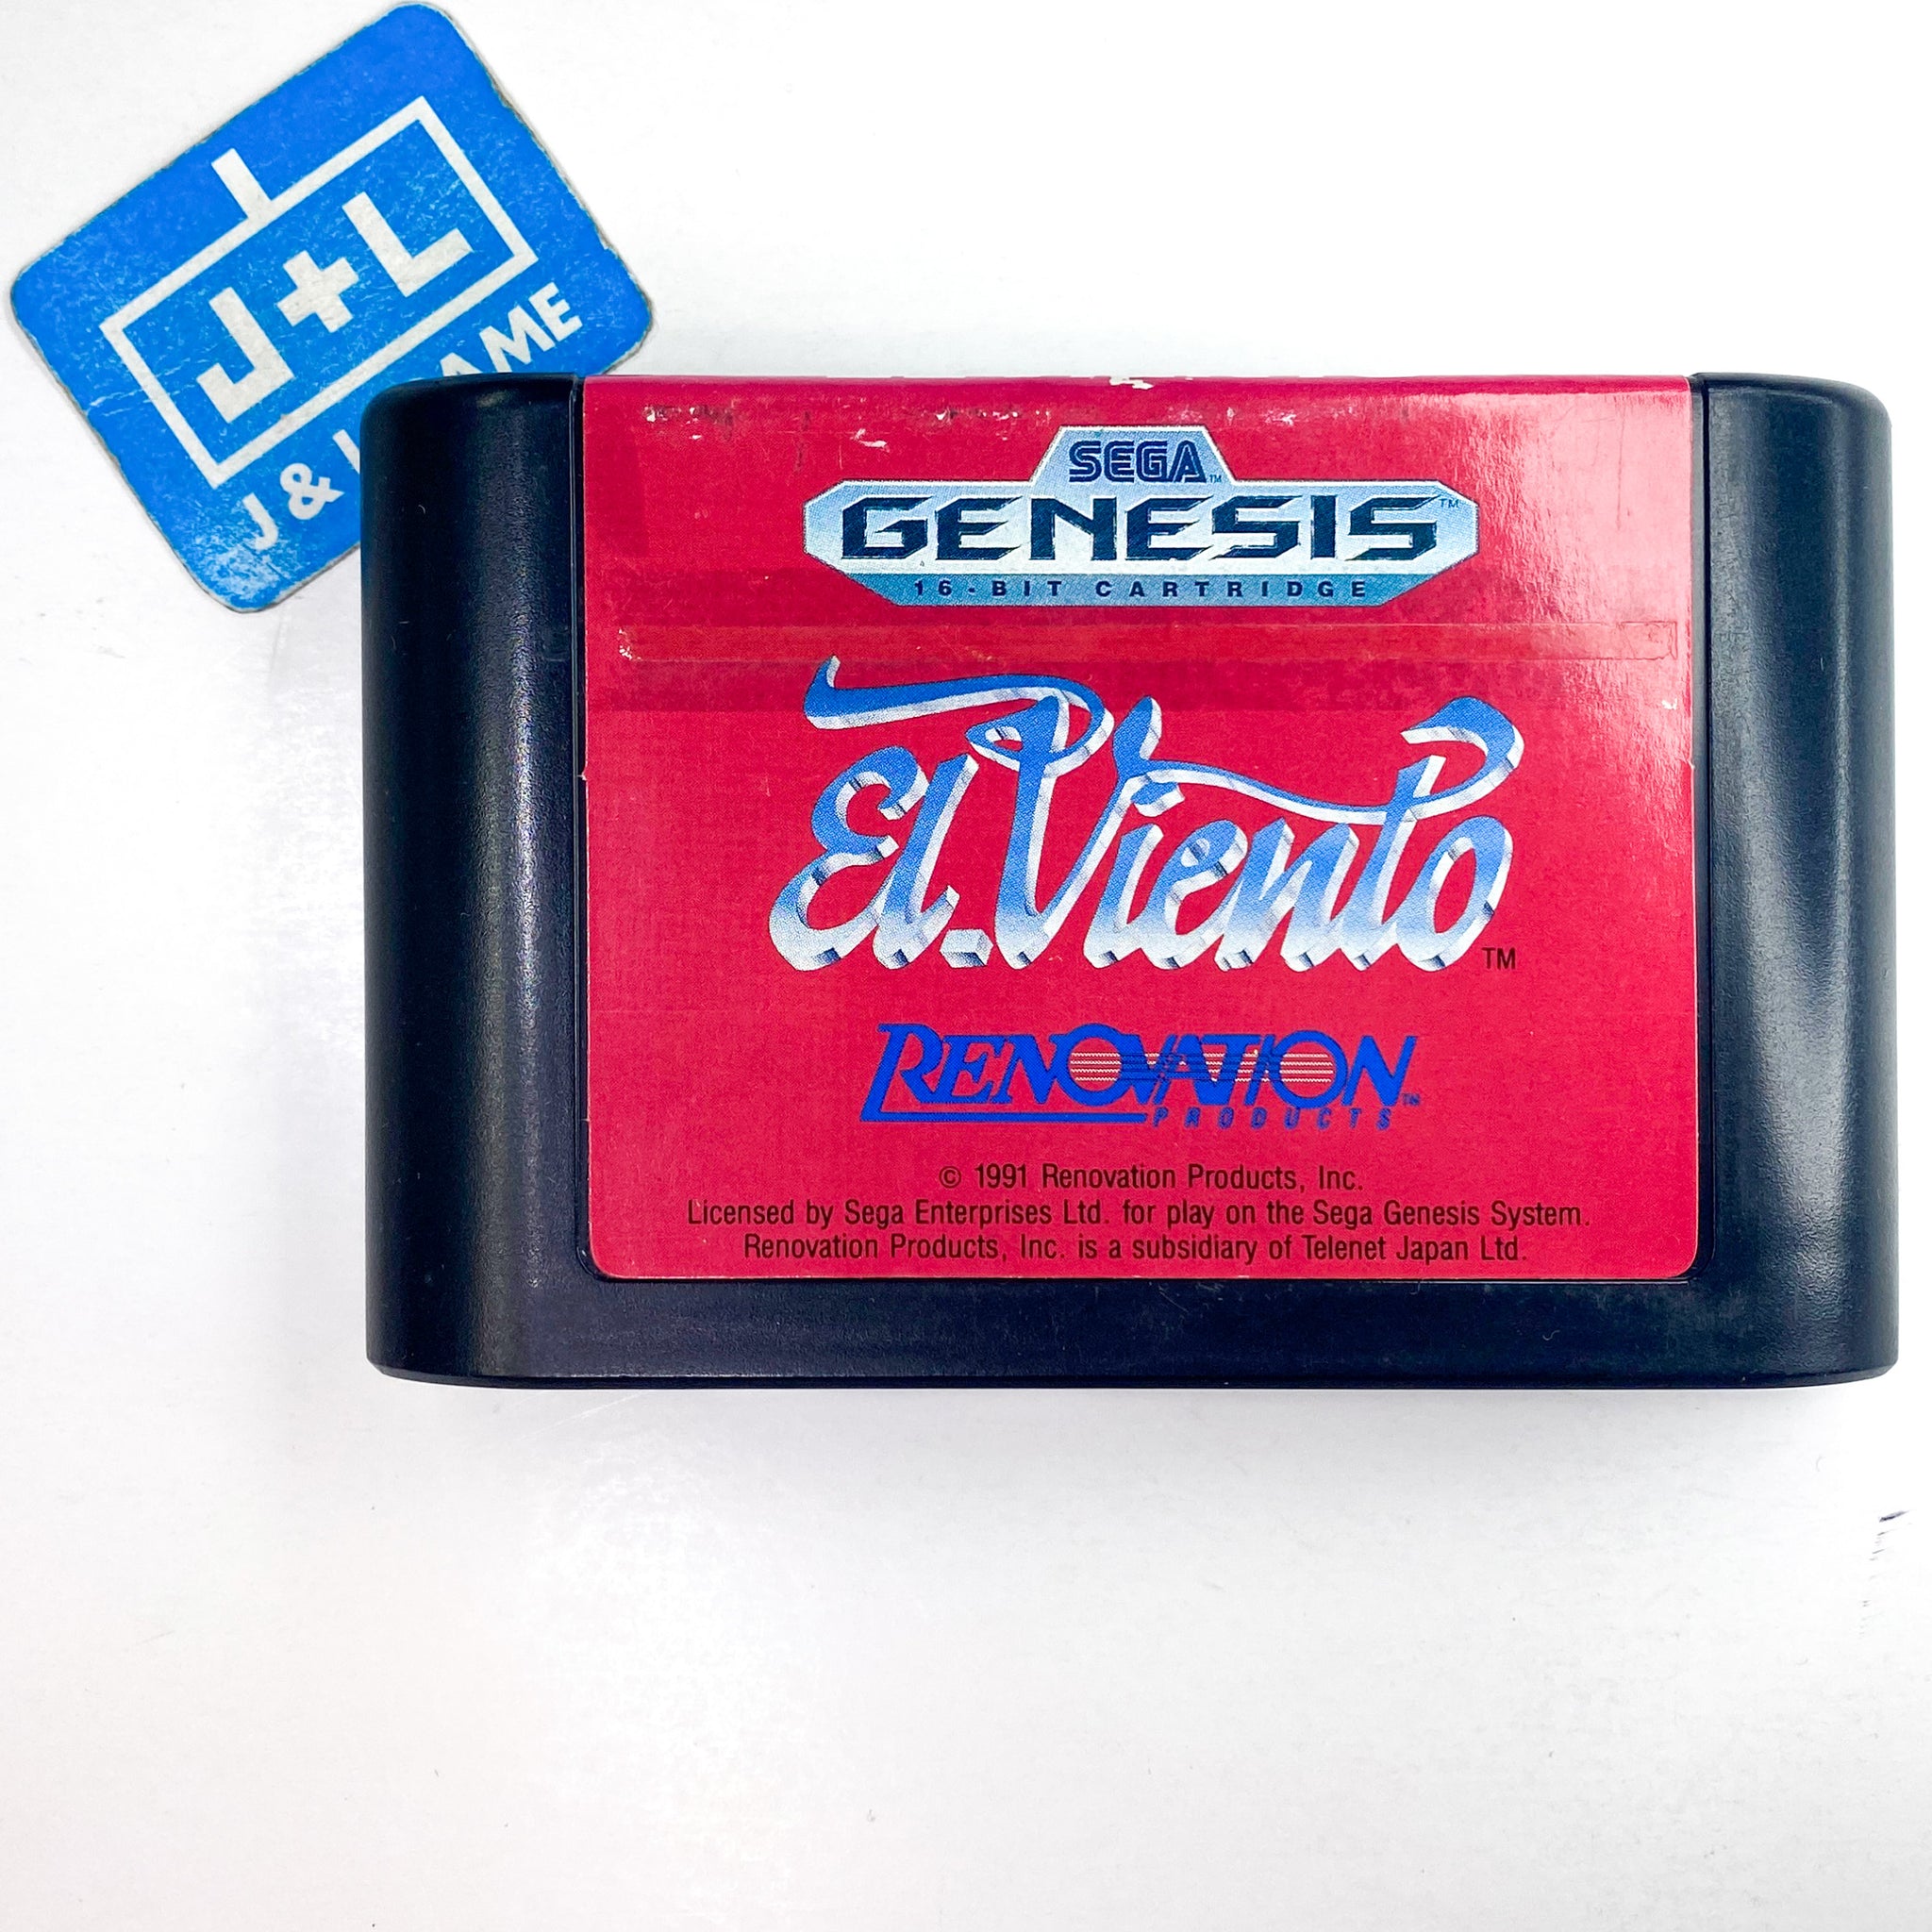 El.Viento - SEGA Genesis [Pre-Owned] Video Games Renovation   